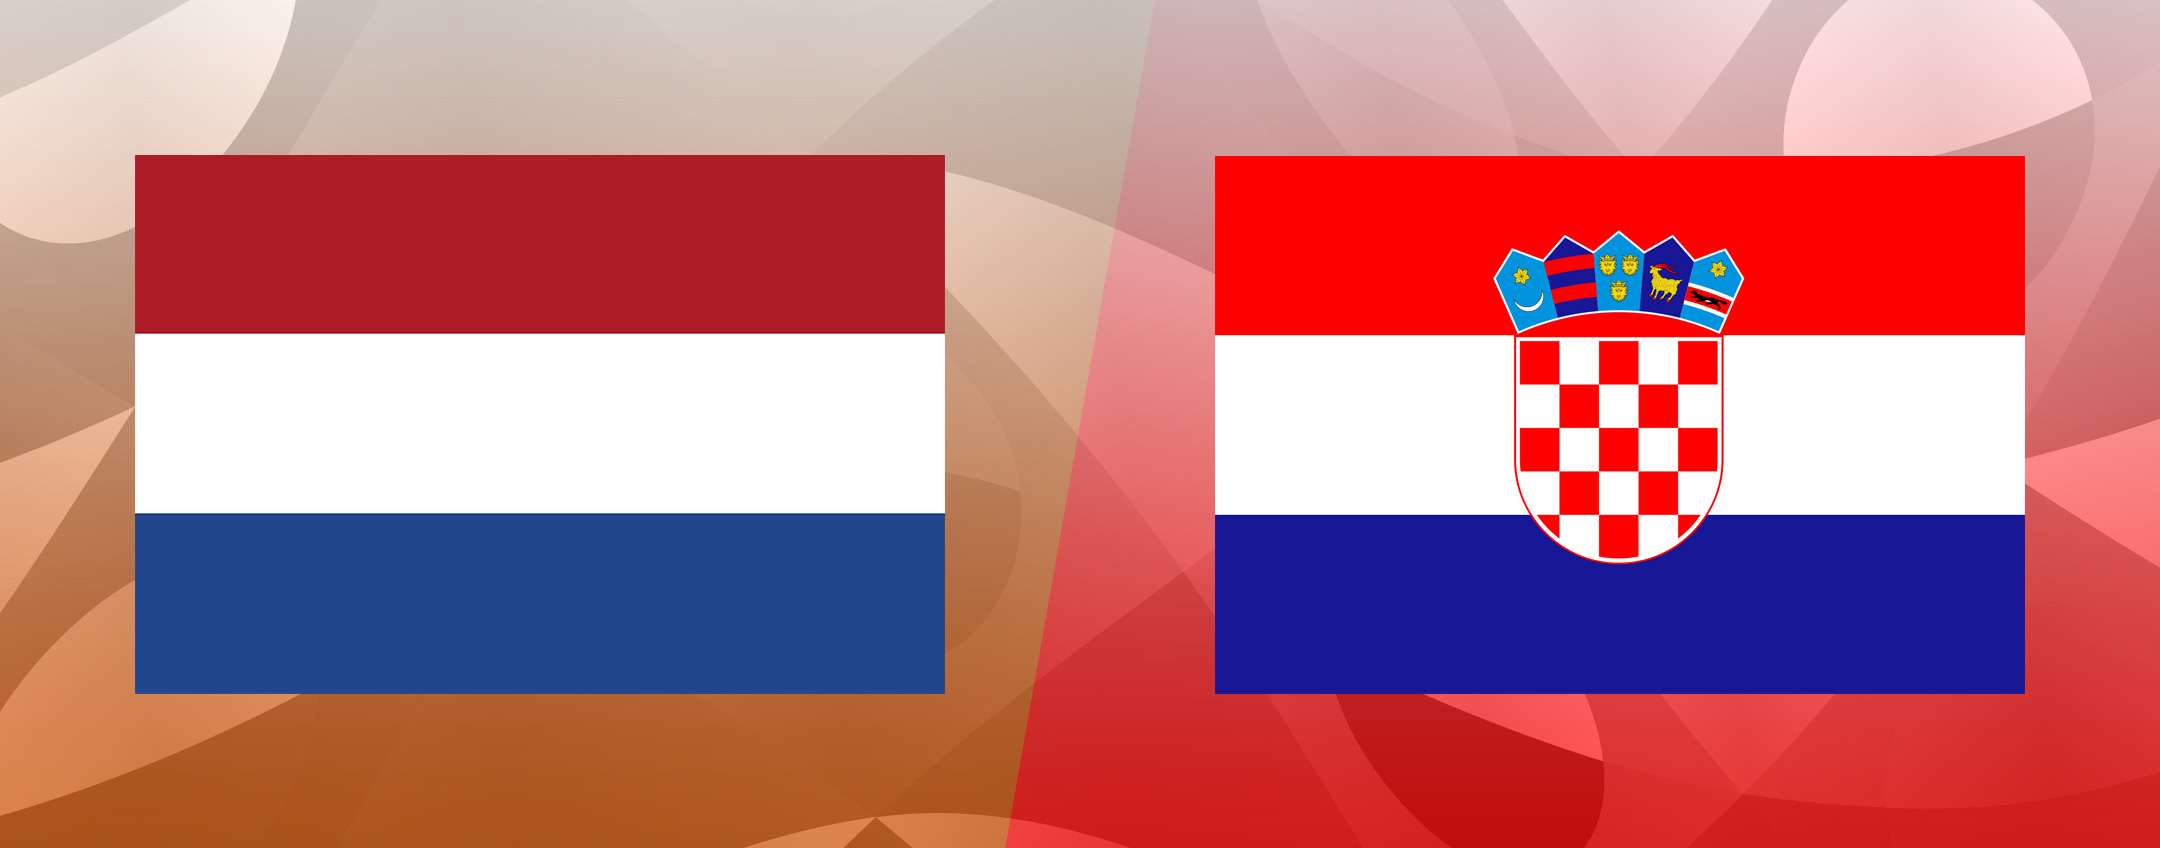 Come vedere Olanda-Croazia in streaming gratis (Nations League)